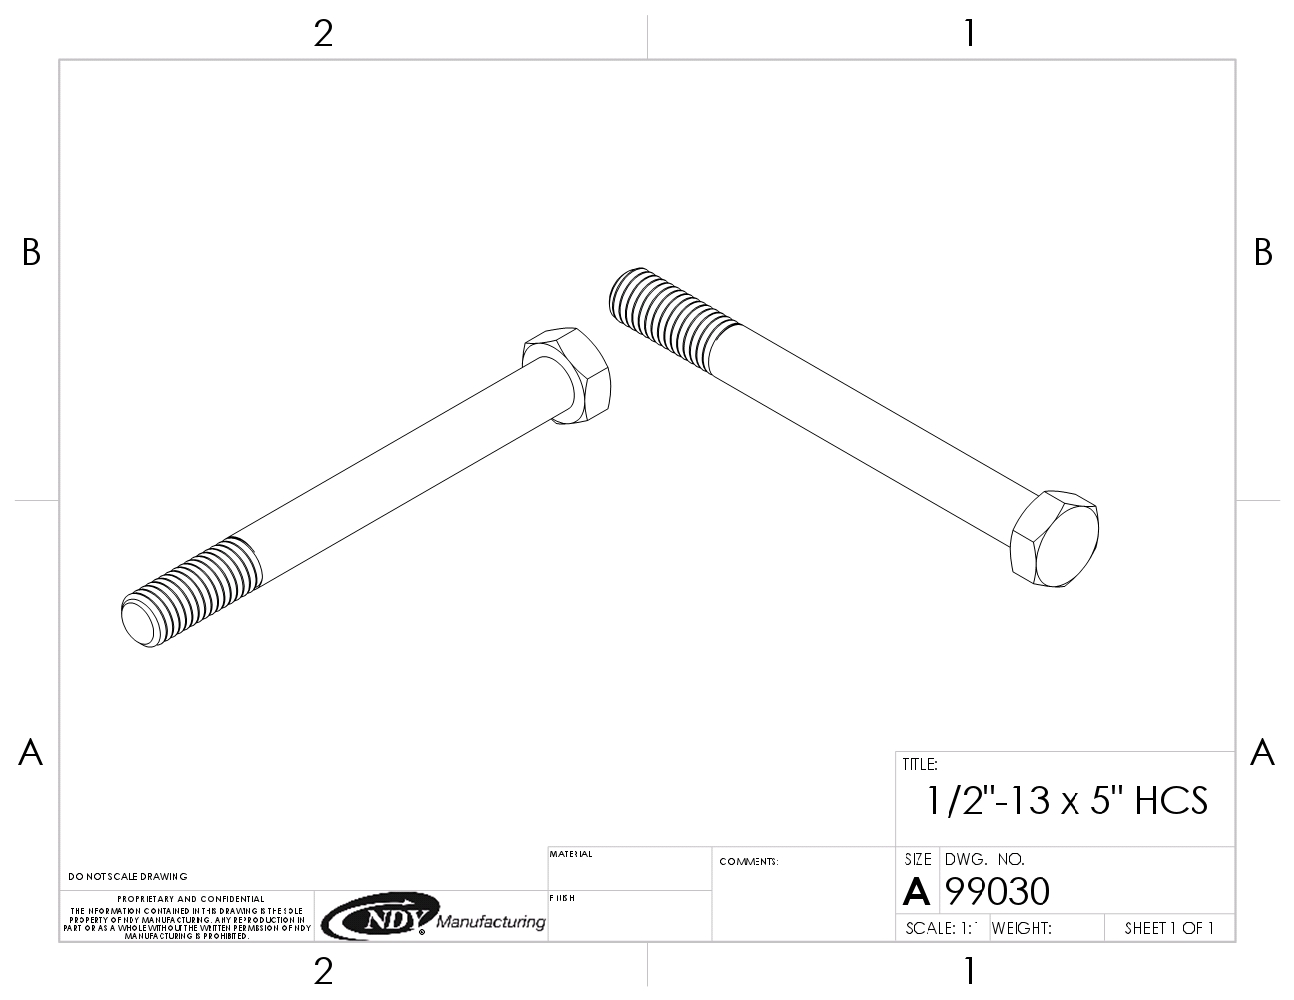 A drawing of a 1/2"-13 x 5" Zinc Finish SAE J429 Grade 5 Hex Cap Screw.